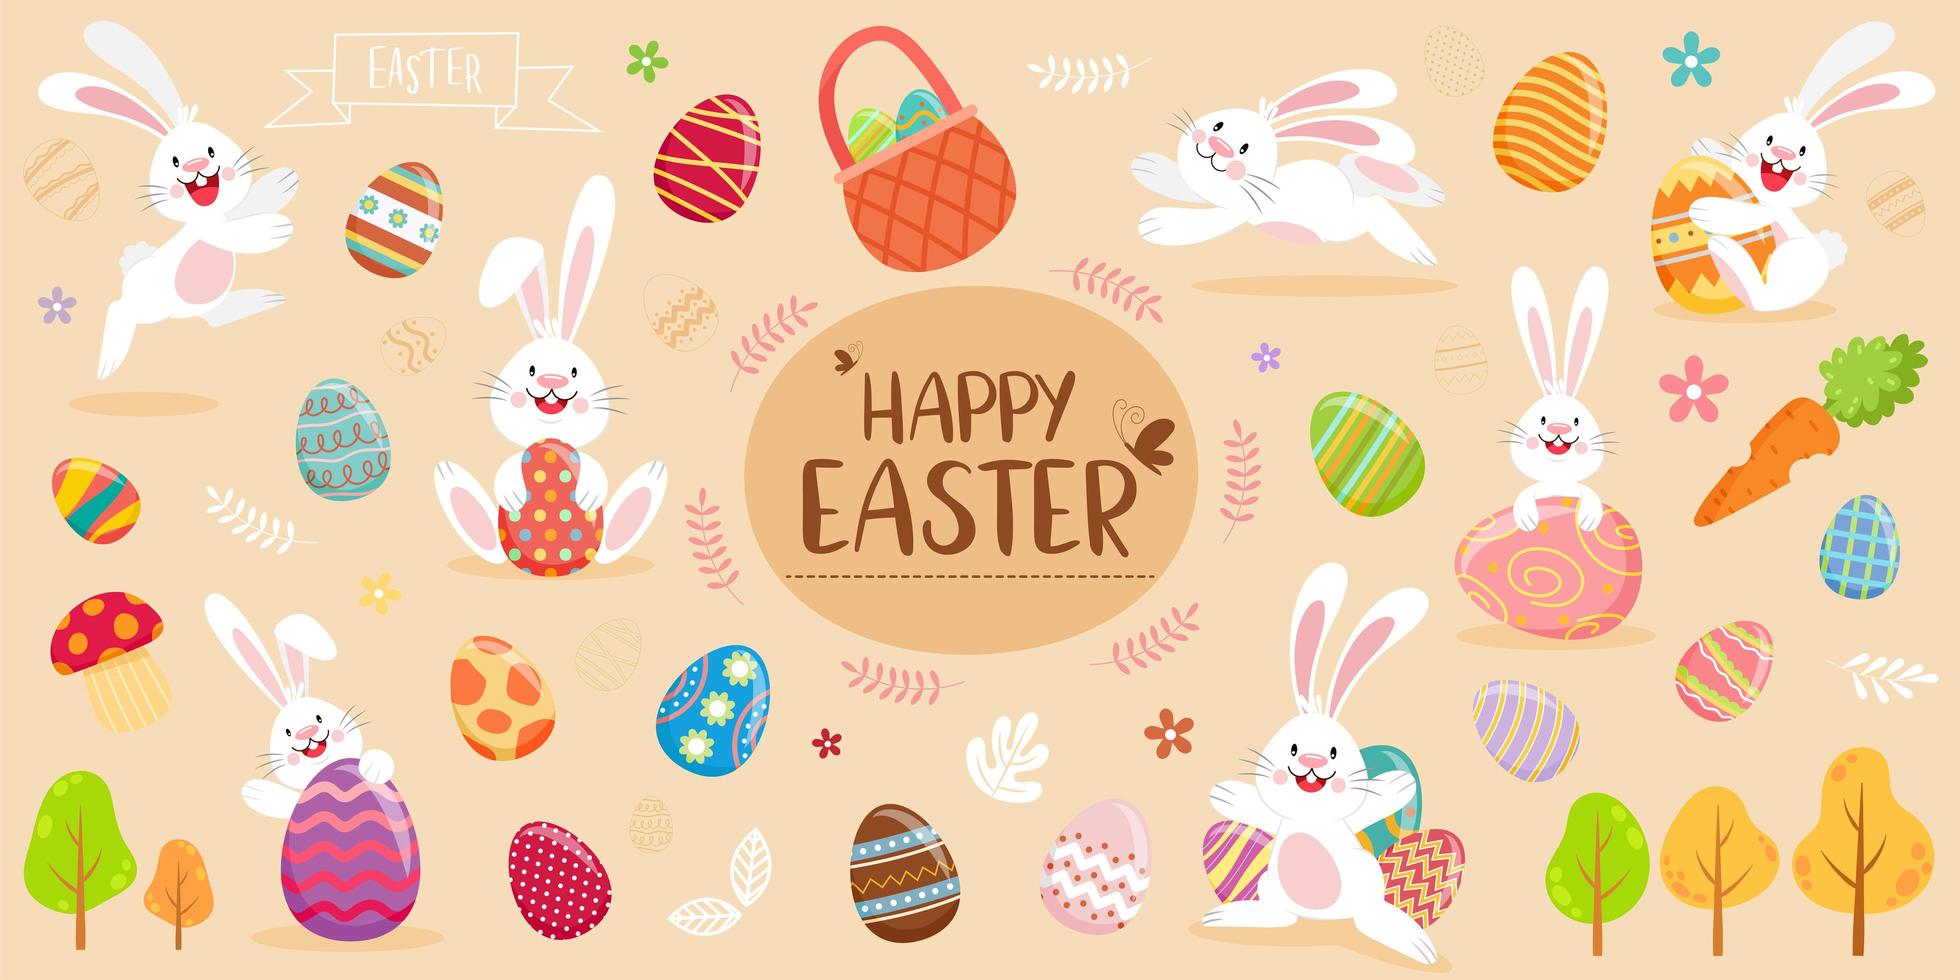 glad påsk banner med kaniner, ägg och lövverk vektor